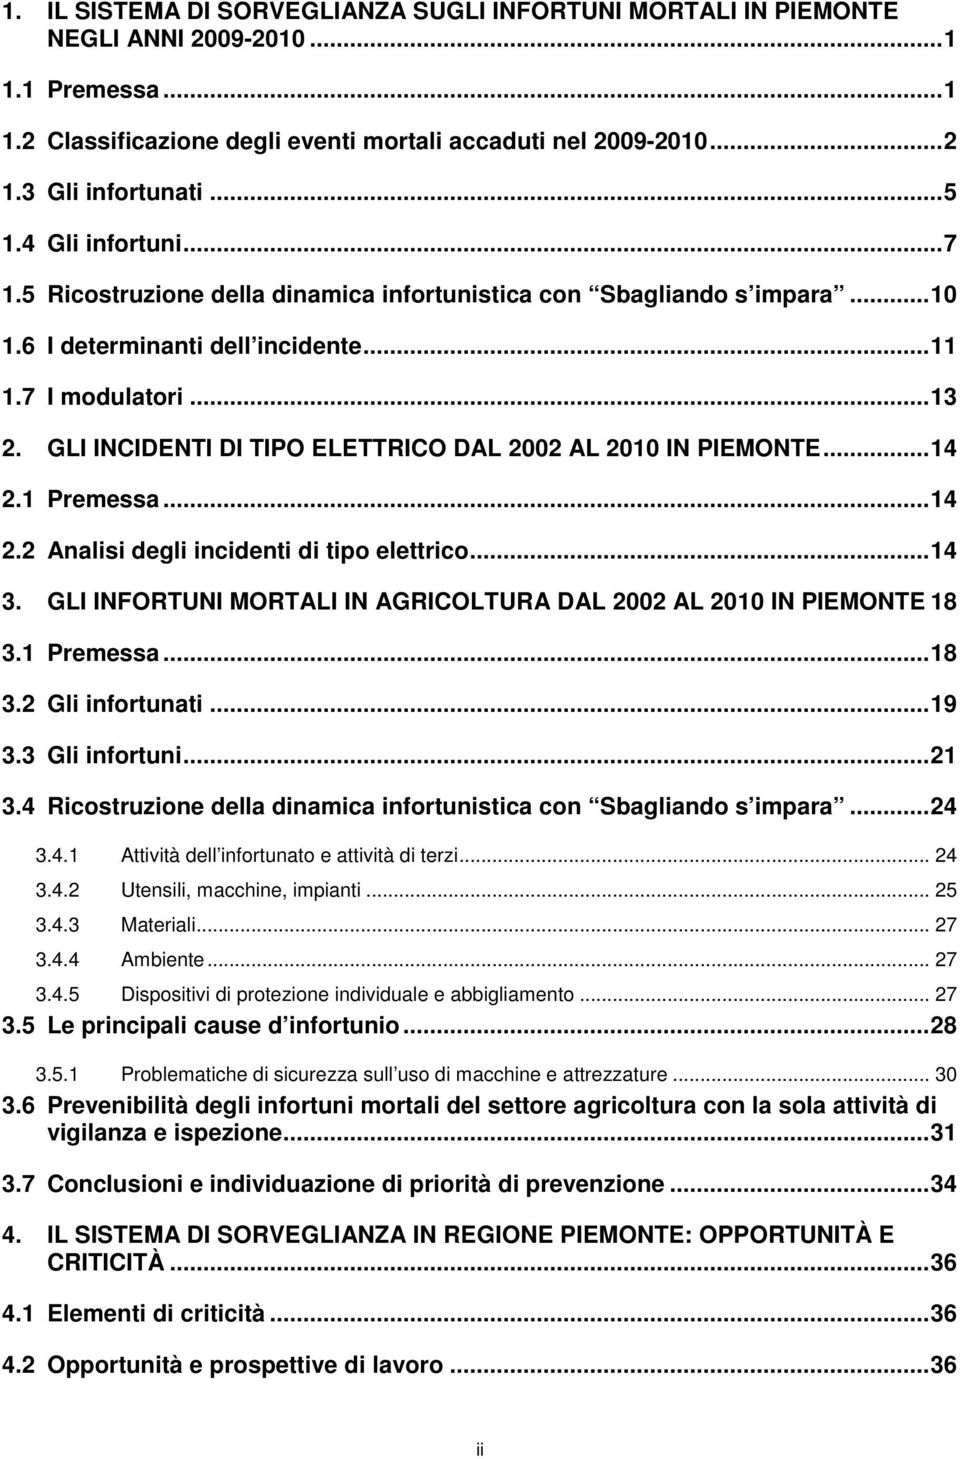 GLI INCIDENTI DI TIPO ELETTRICO DAL 2002 AL 2010 IN PIEMONTE...14 2.1 Premessa...14 2.2 Analisi degli incidenti di tipo elettrico...14 3.